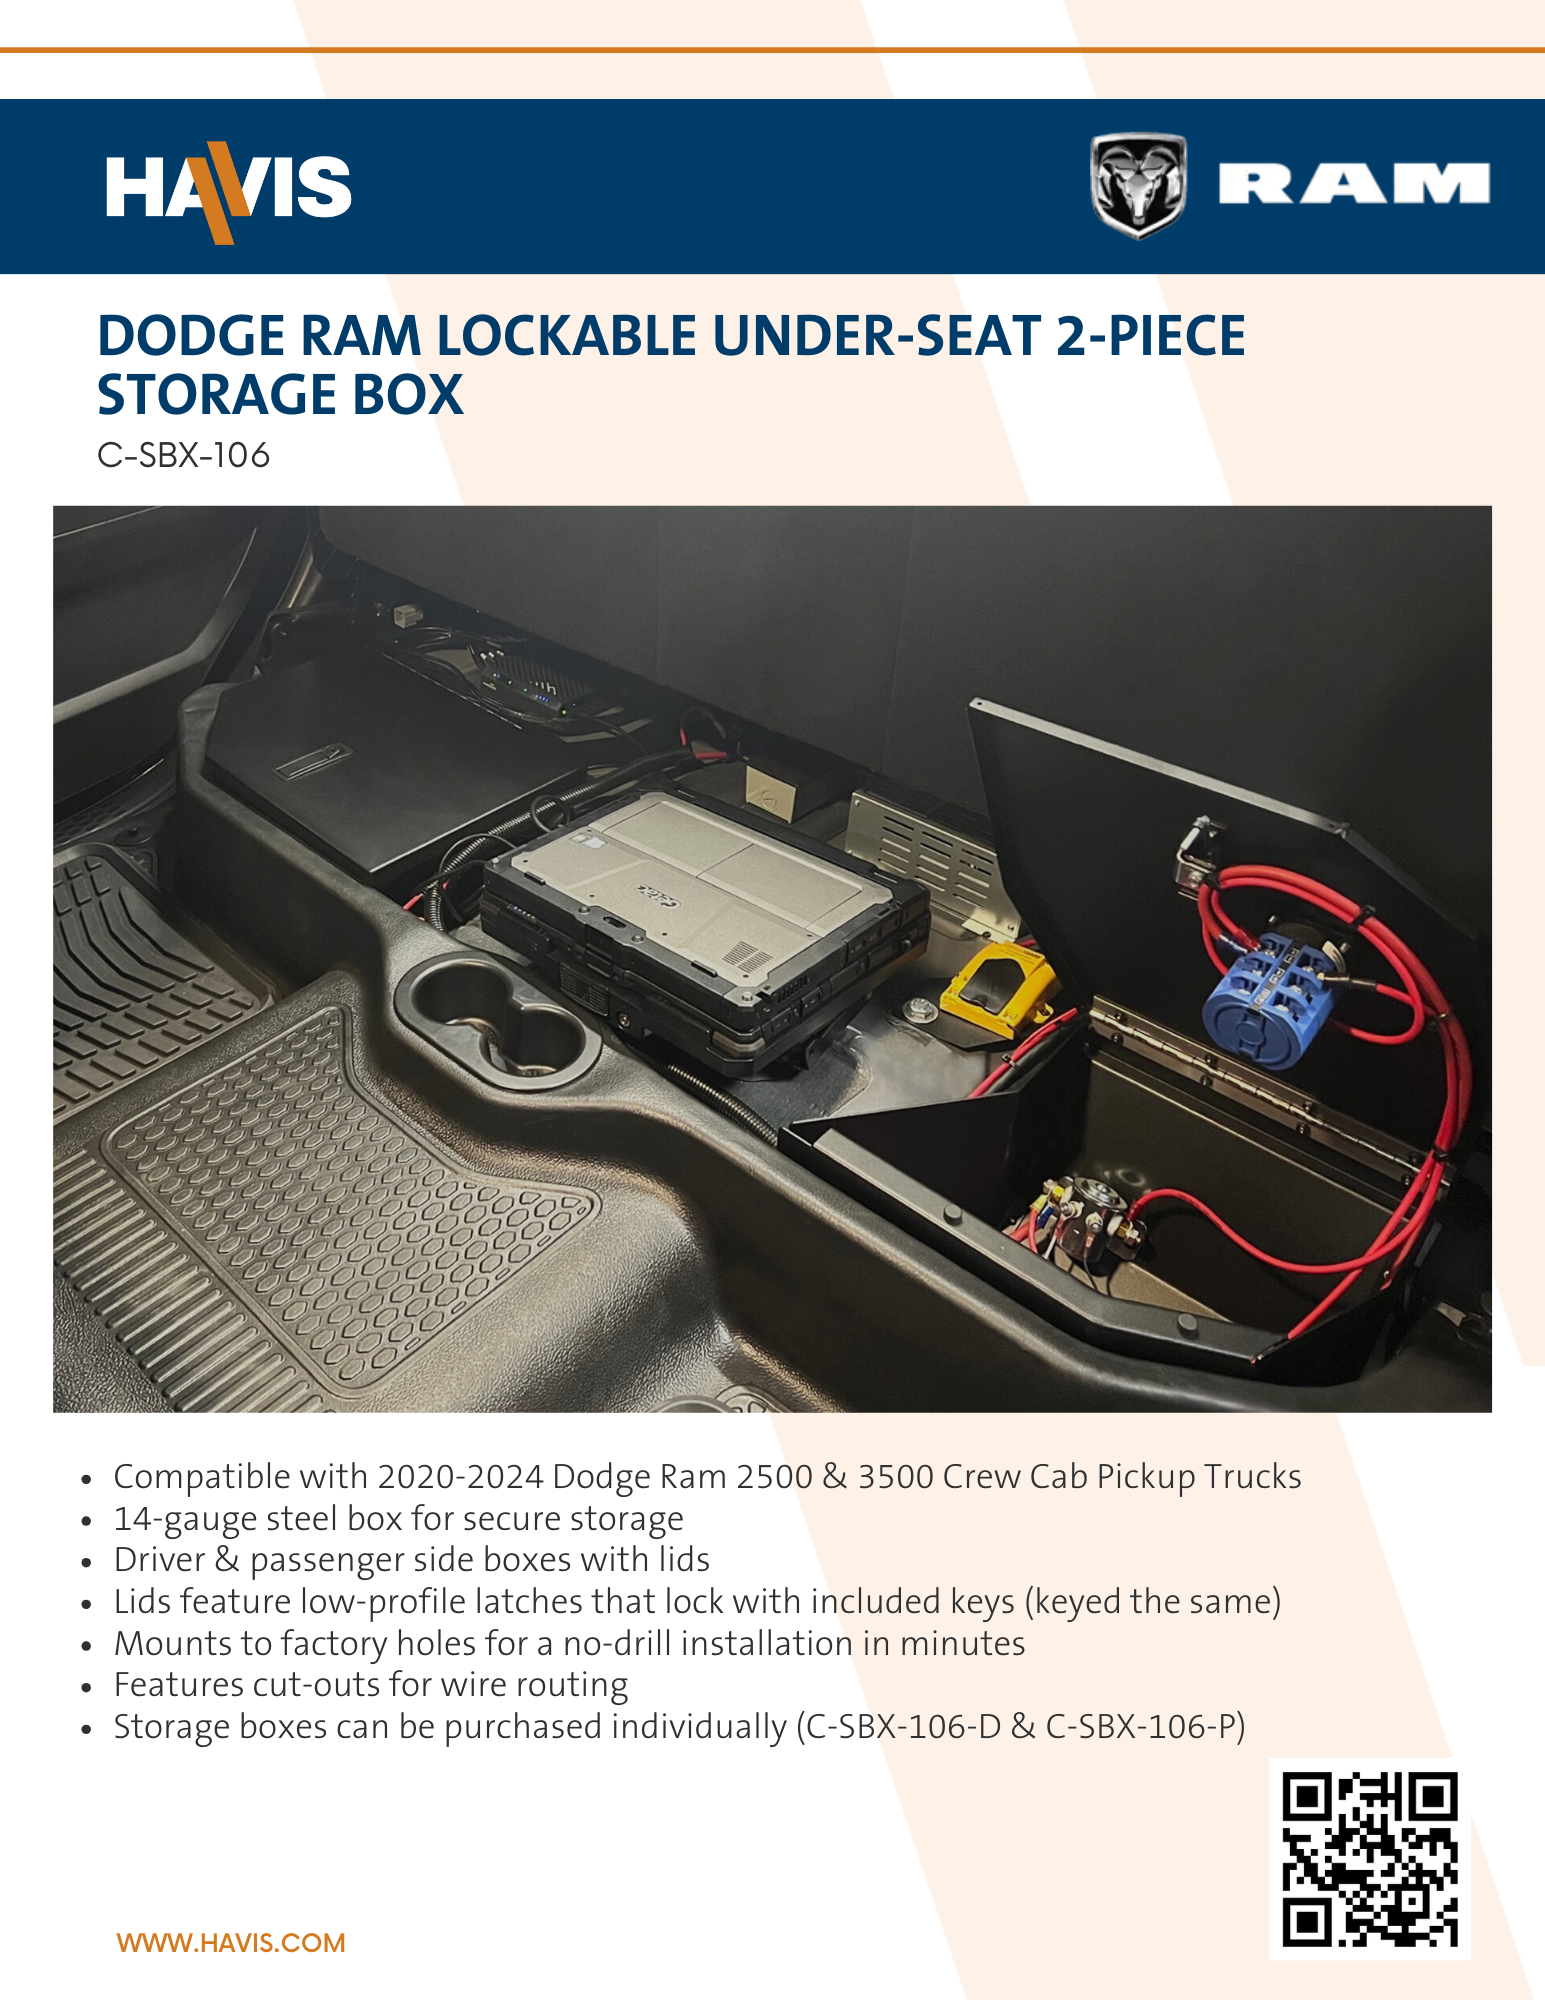 2020-2024 Dodge Ram Lockable Under-Seat 2-Piece Storage Box